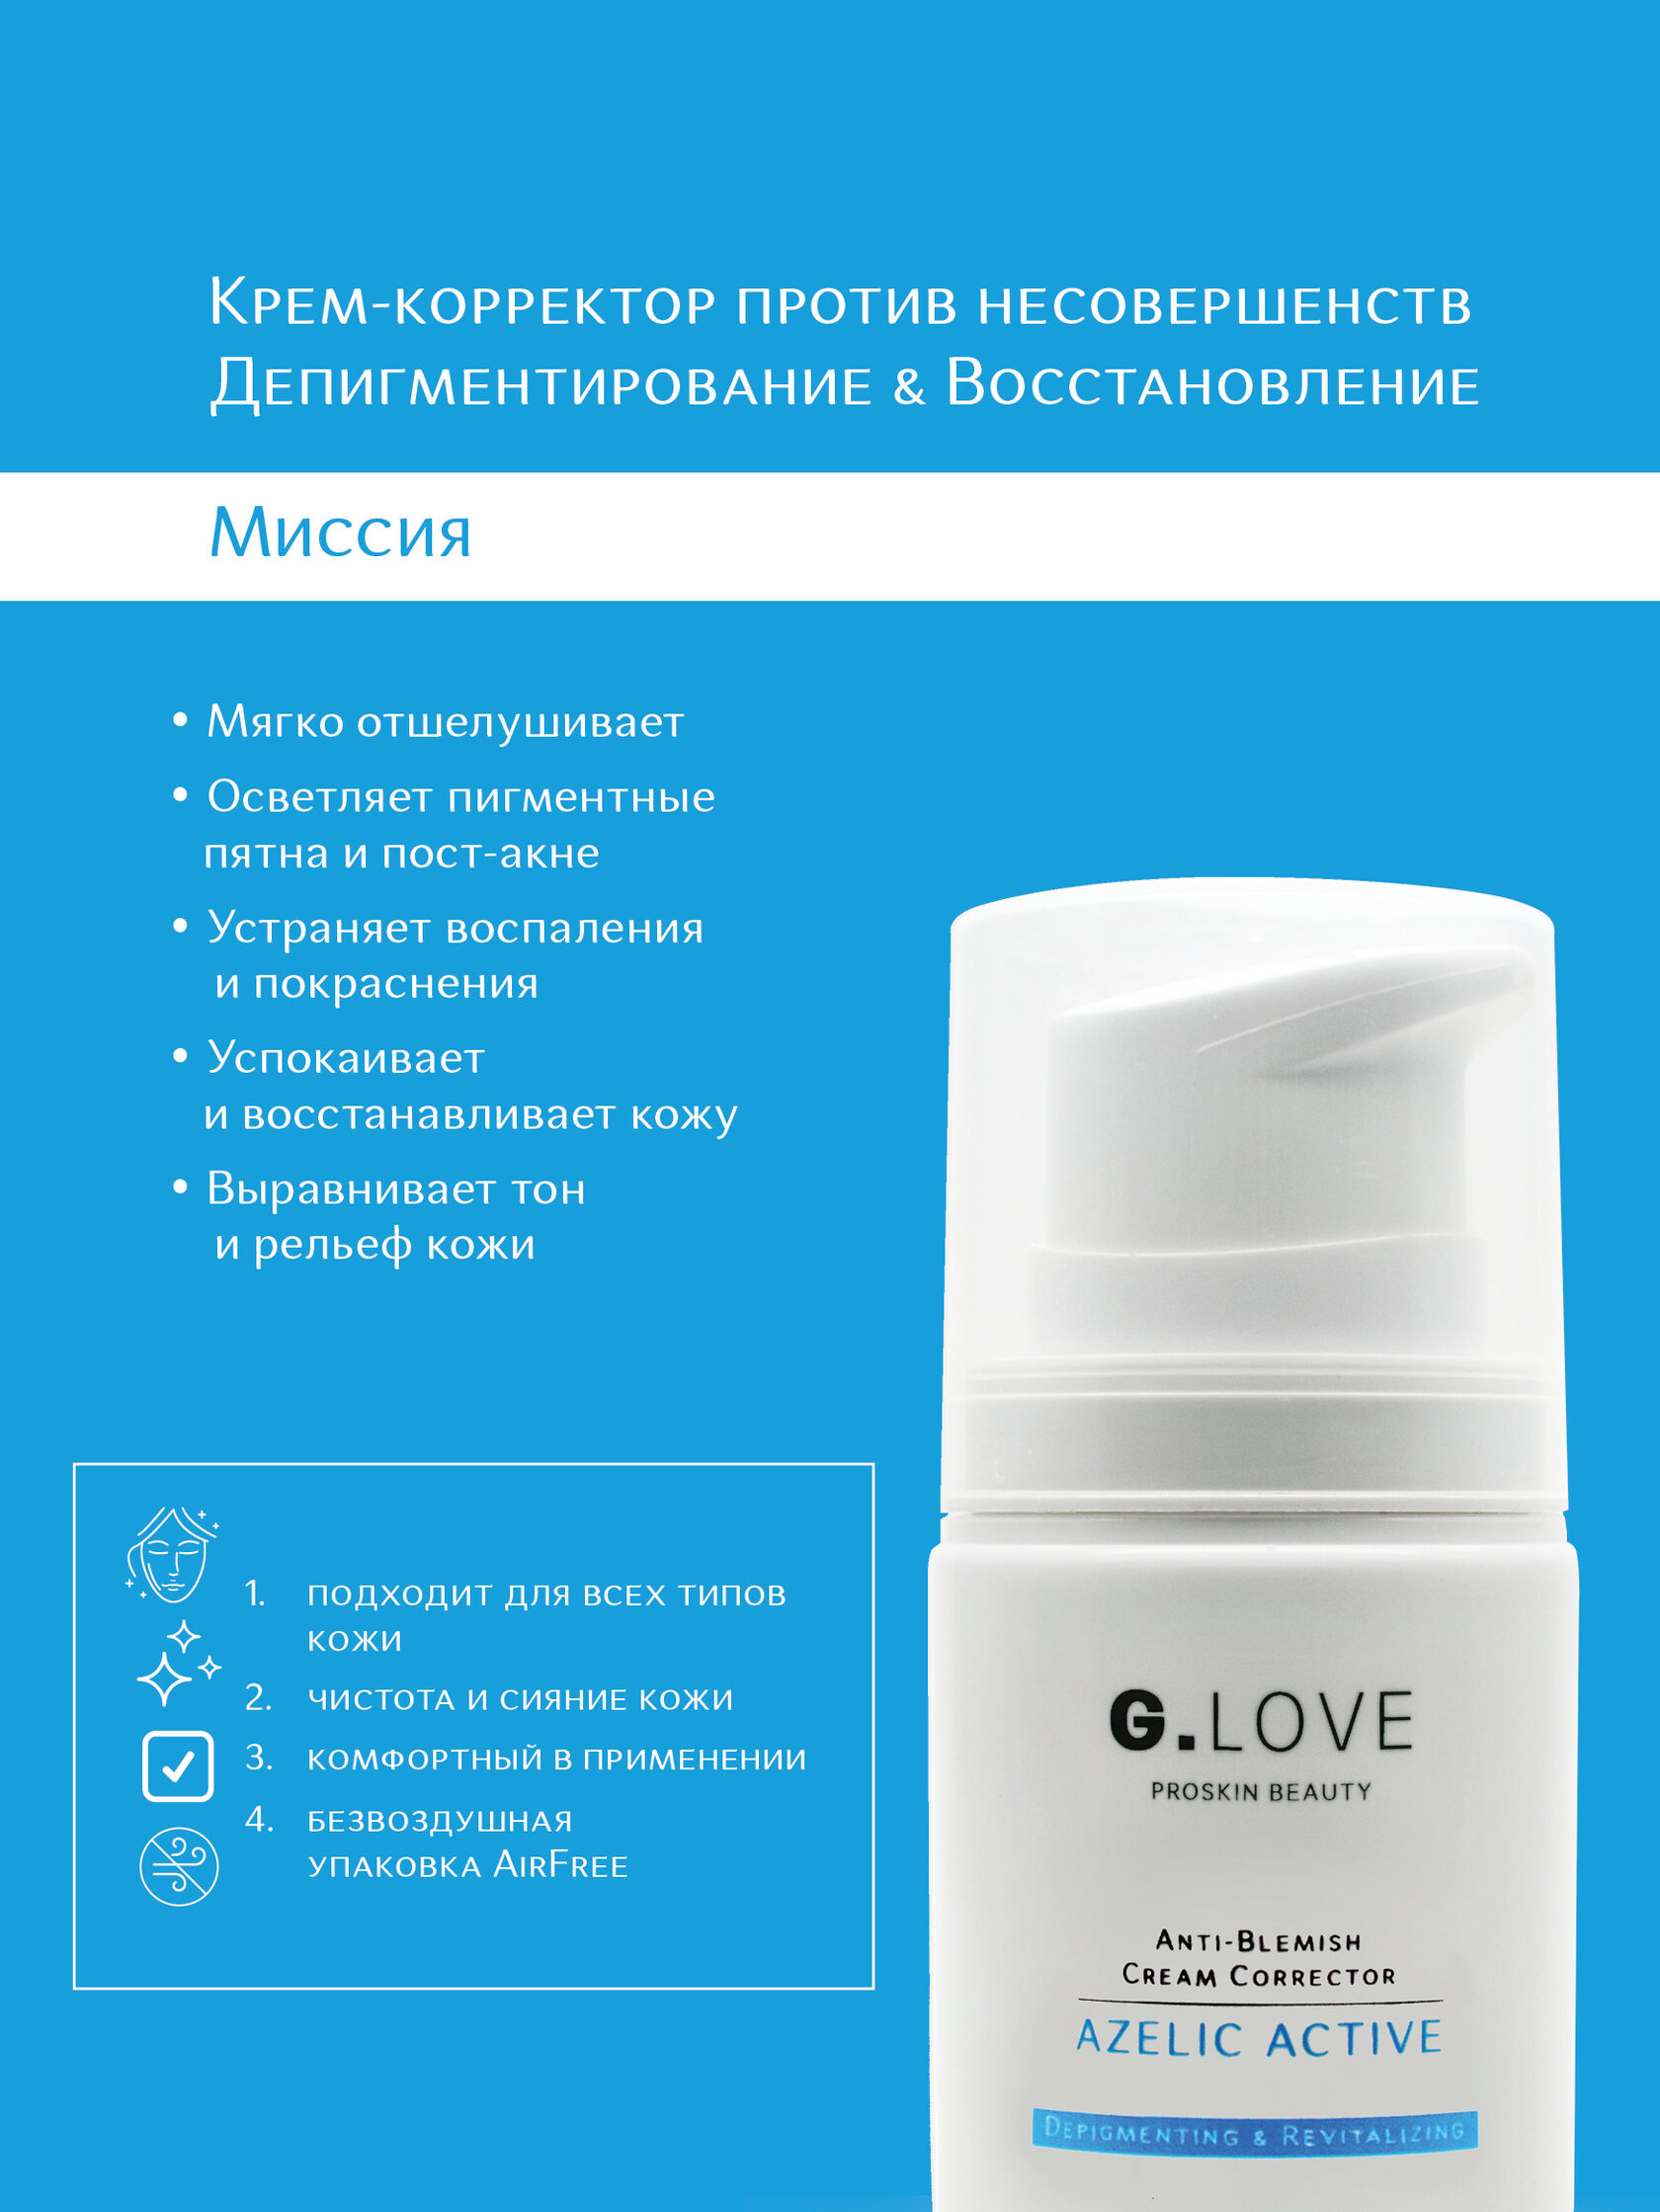 G.Love Anti-Blemish Cream Corrector AzeLic Active 68330686 - фото 6